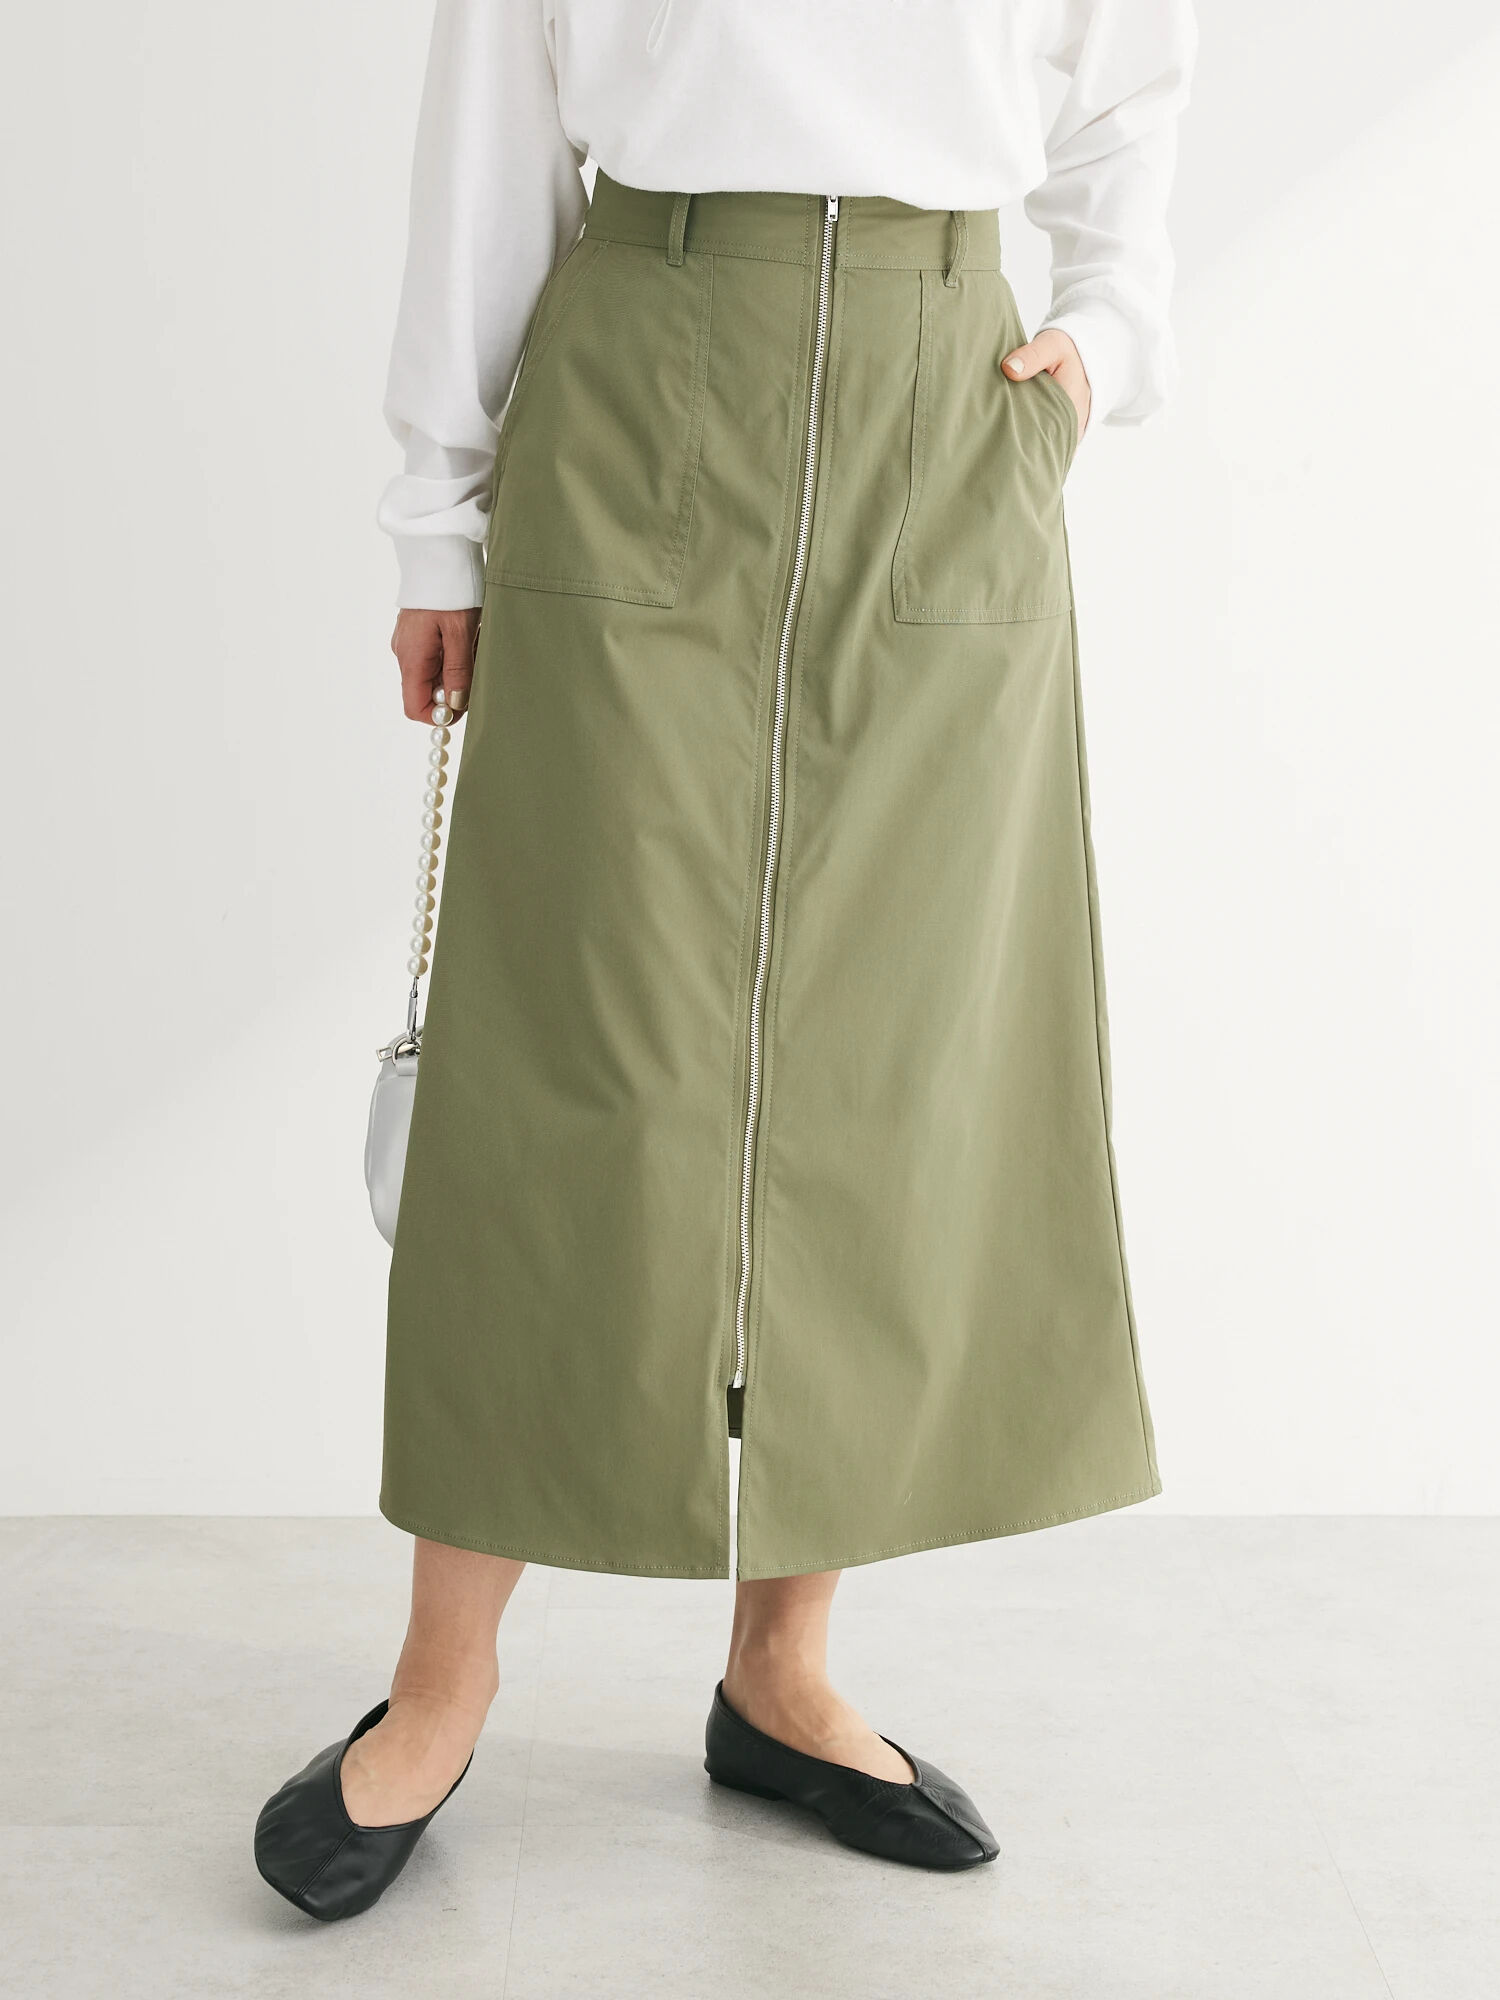 フロントZIPセミフレアスカート / Green Parks(グリーンパークス)のスカート ファッション通販のSTRIPE CLUB